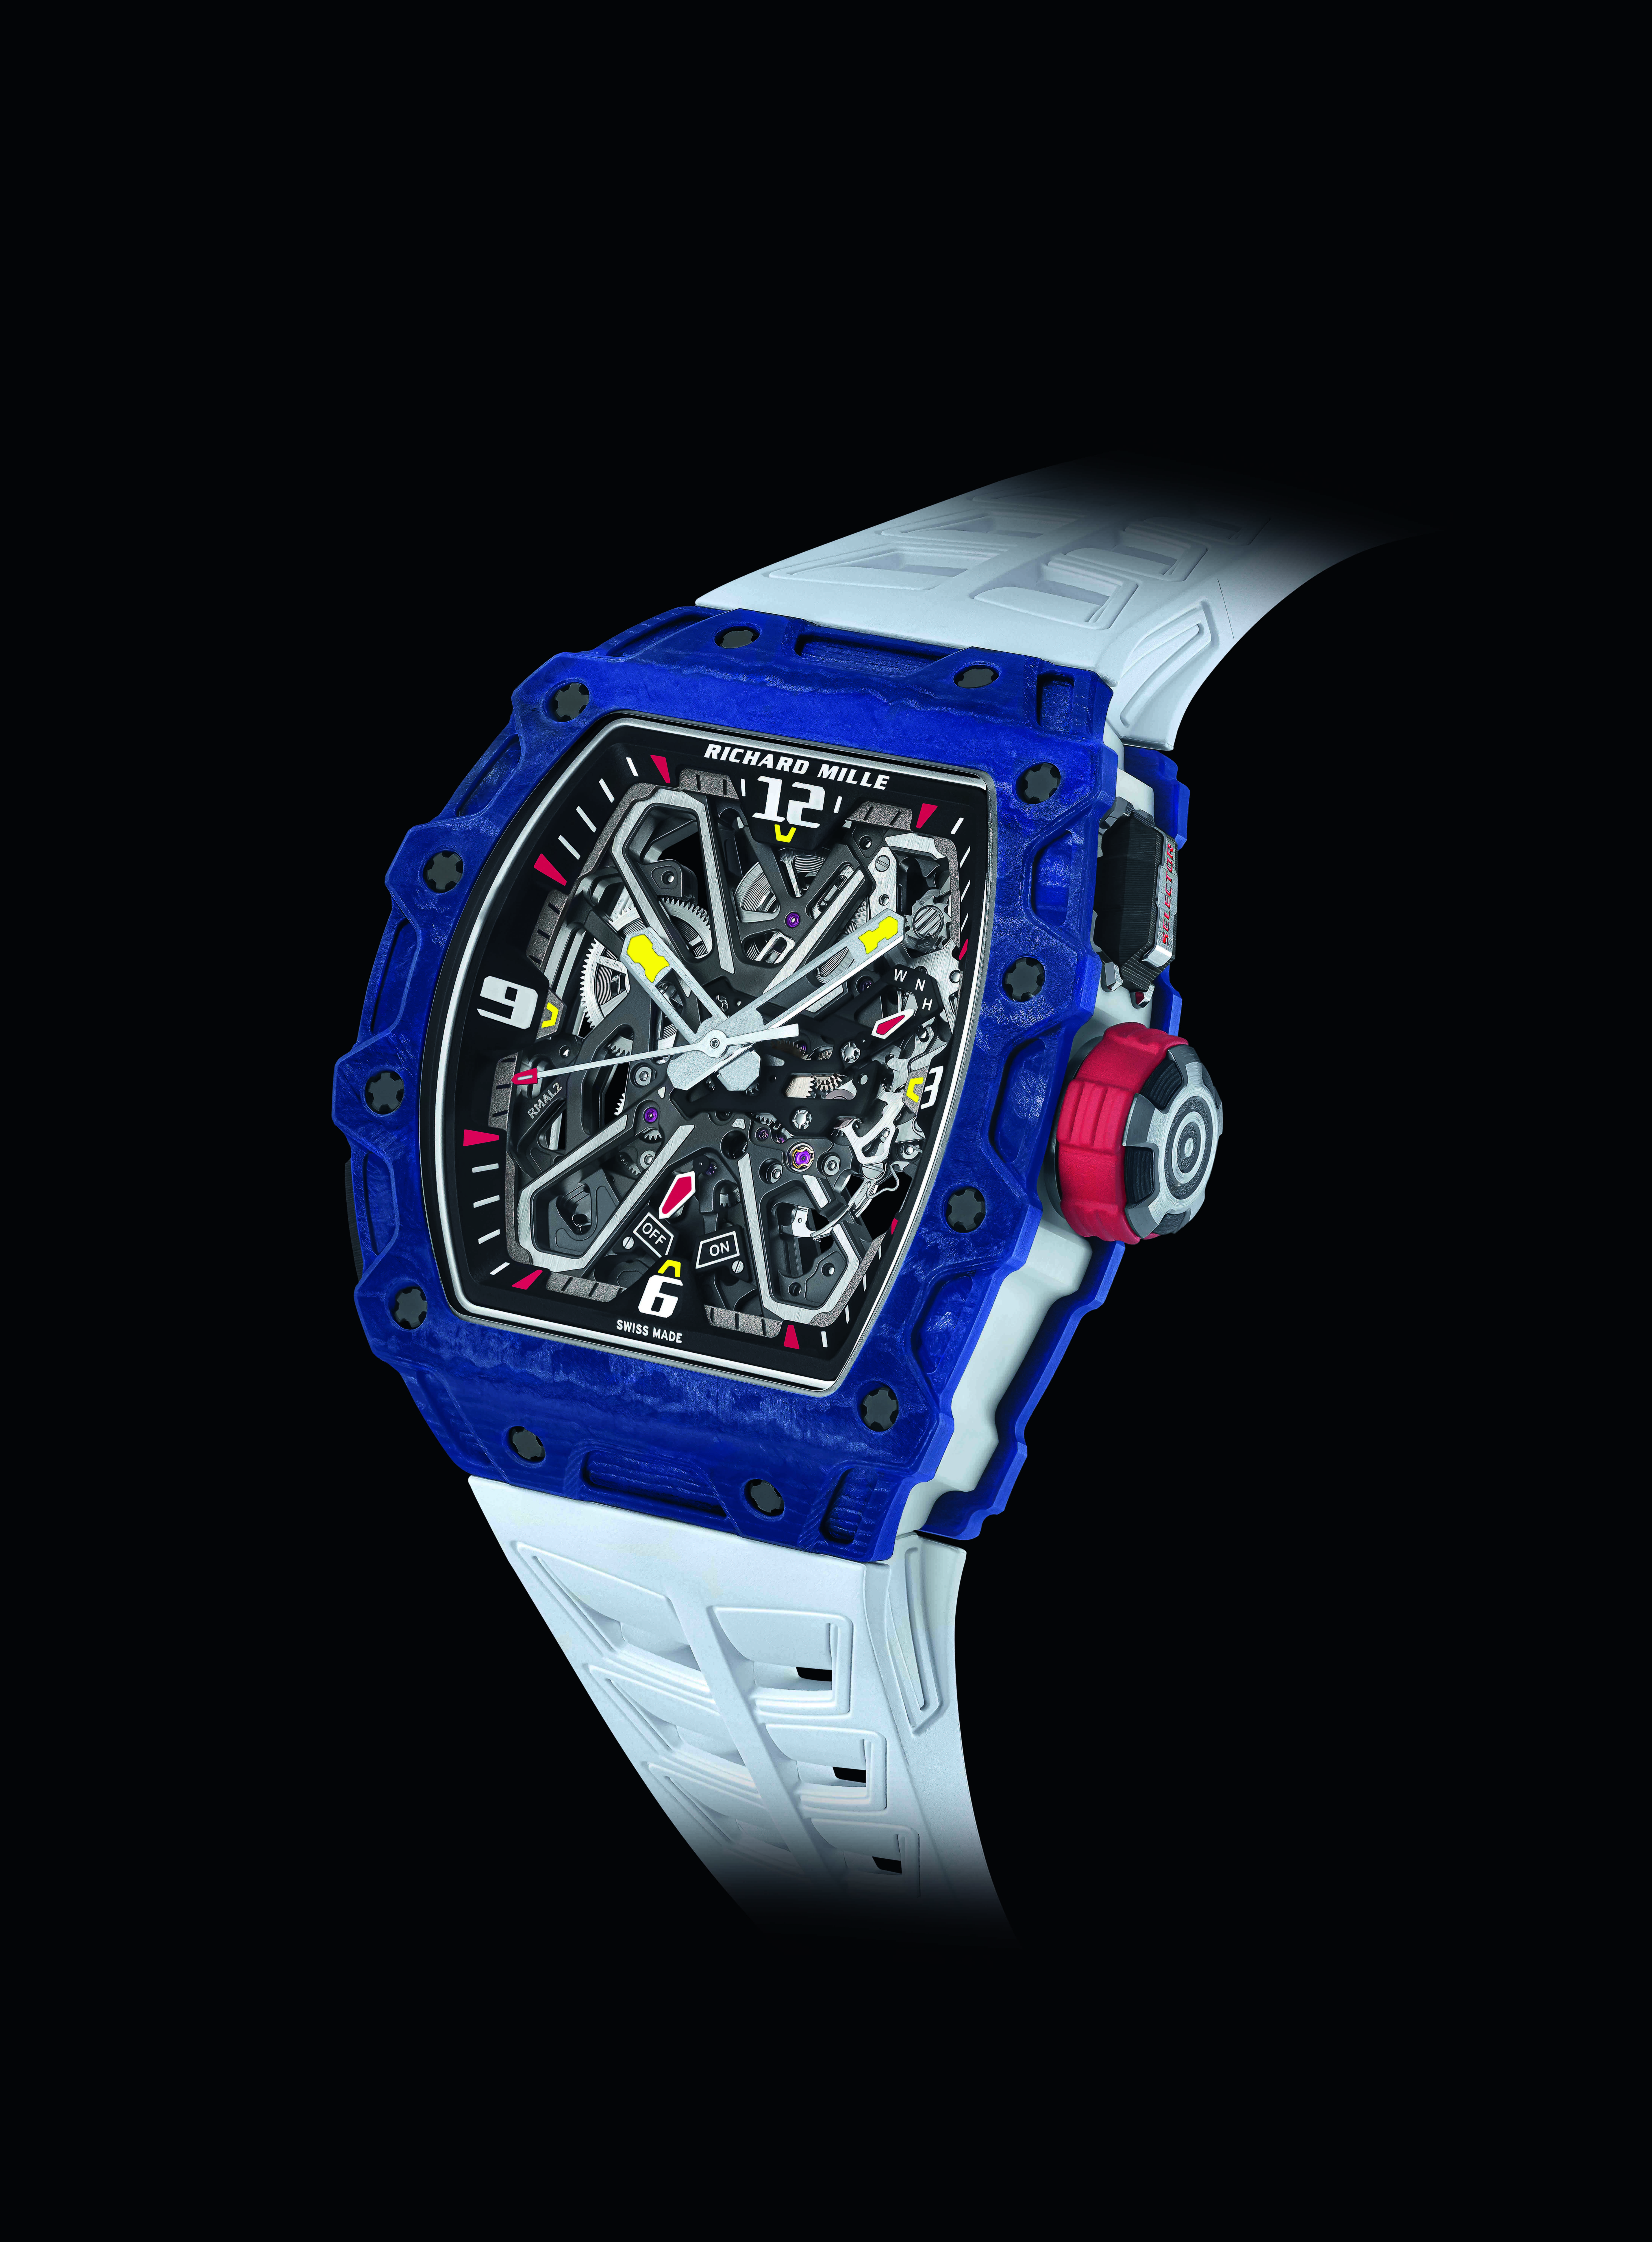 RICHARD MILLE RM 35-03 Rafael Nadal自動上鍊腕錶藍色及白色錶殼採用的Quartz TPT®石英纖維材質，是品牌重大創新材質之一